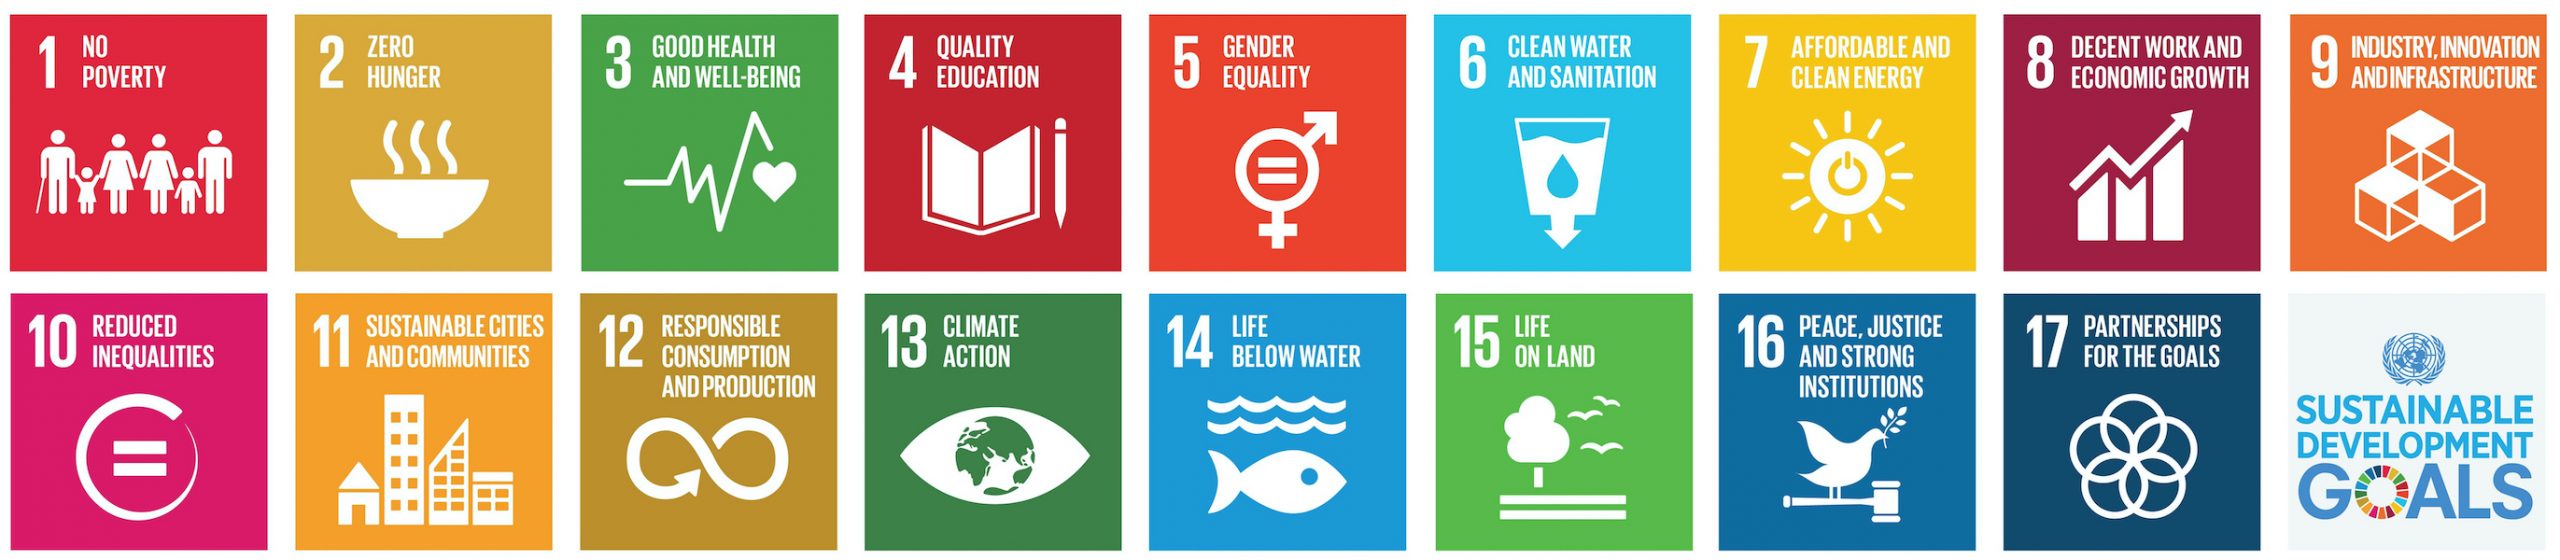 SDGs_logos_banner-ocean-goals